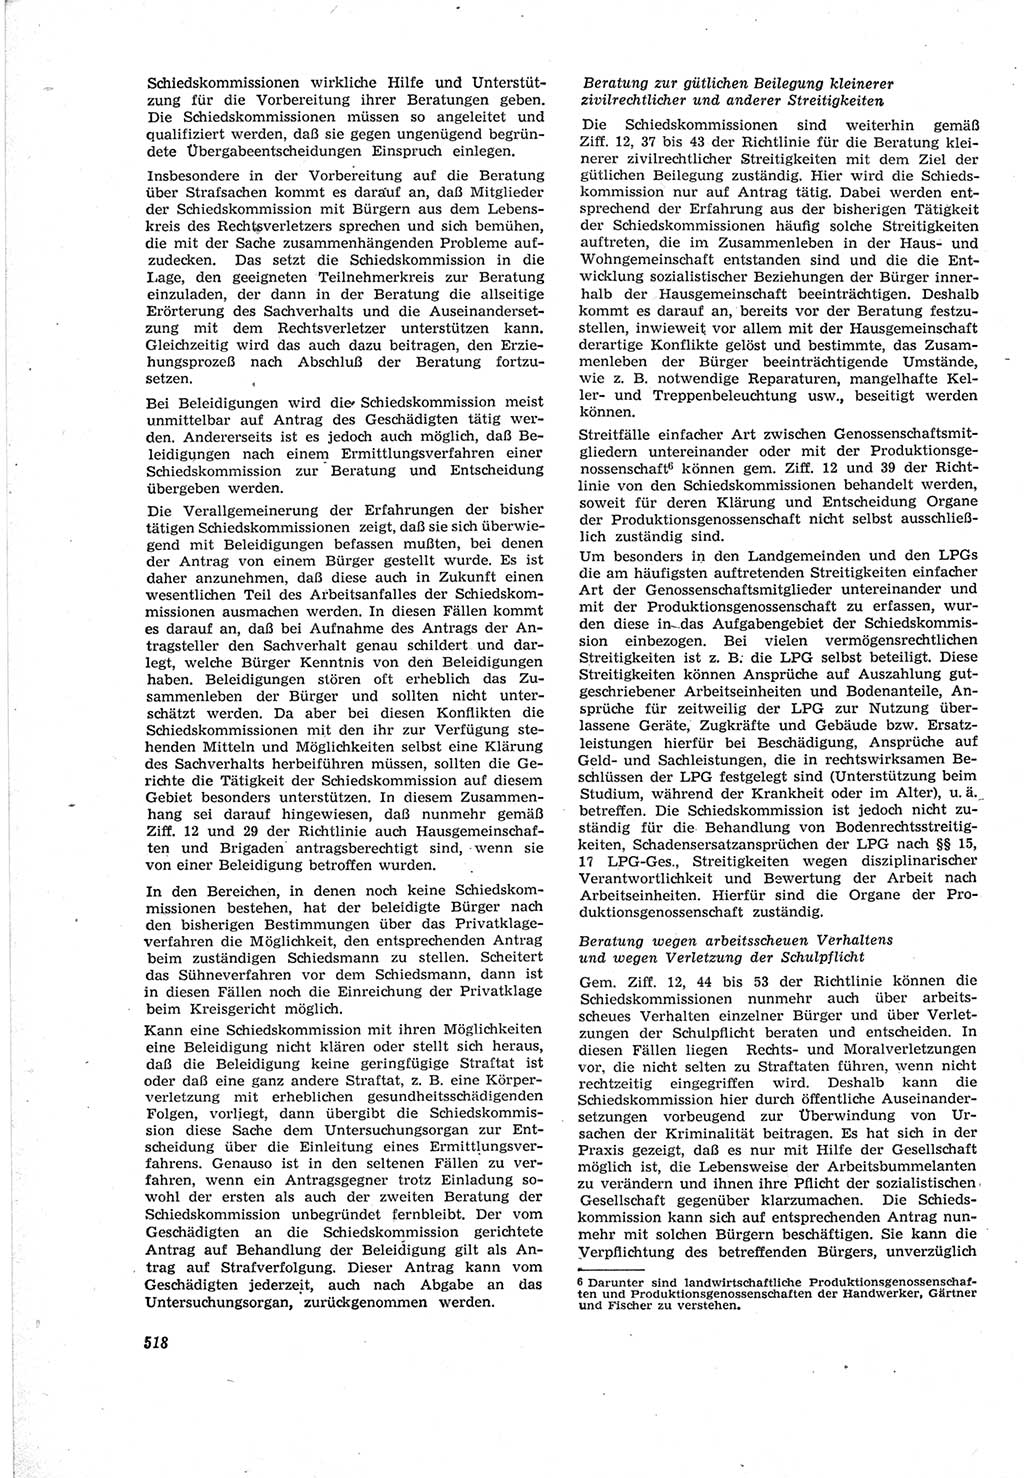 Neue Justiz (NJ), Zeitschrift für Recht und Rechtswissenschaft [Deutsche Demokratische Republik (DDR)], 18. Jahrgang 1964, Seite 518 (NJ DDR 1964, S. 518)